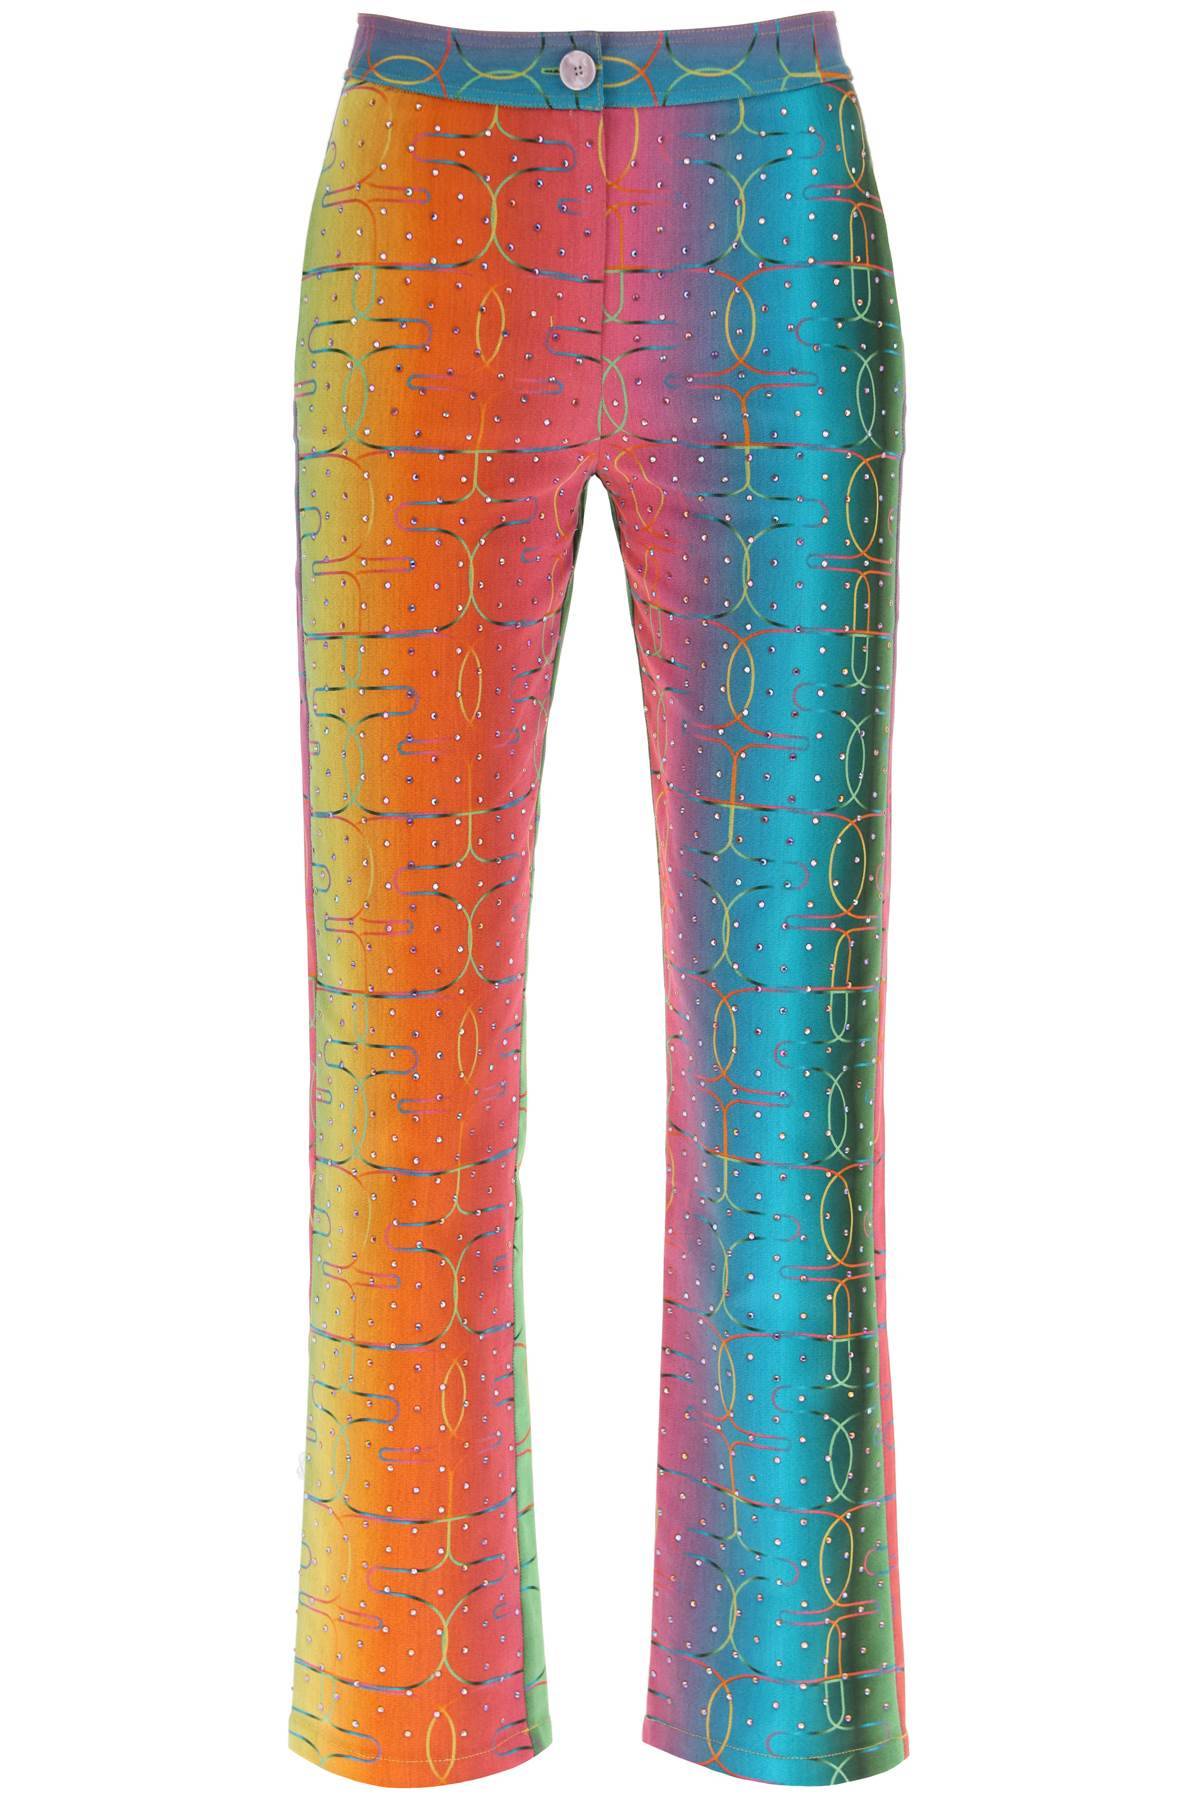 SIEDRES SIEDRES 'bery' multicolor rhinestone pants